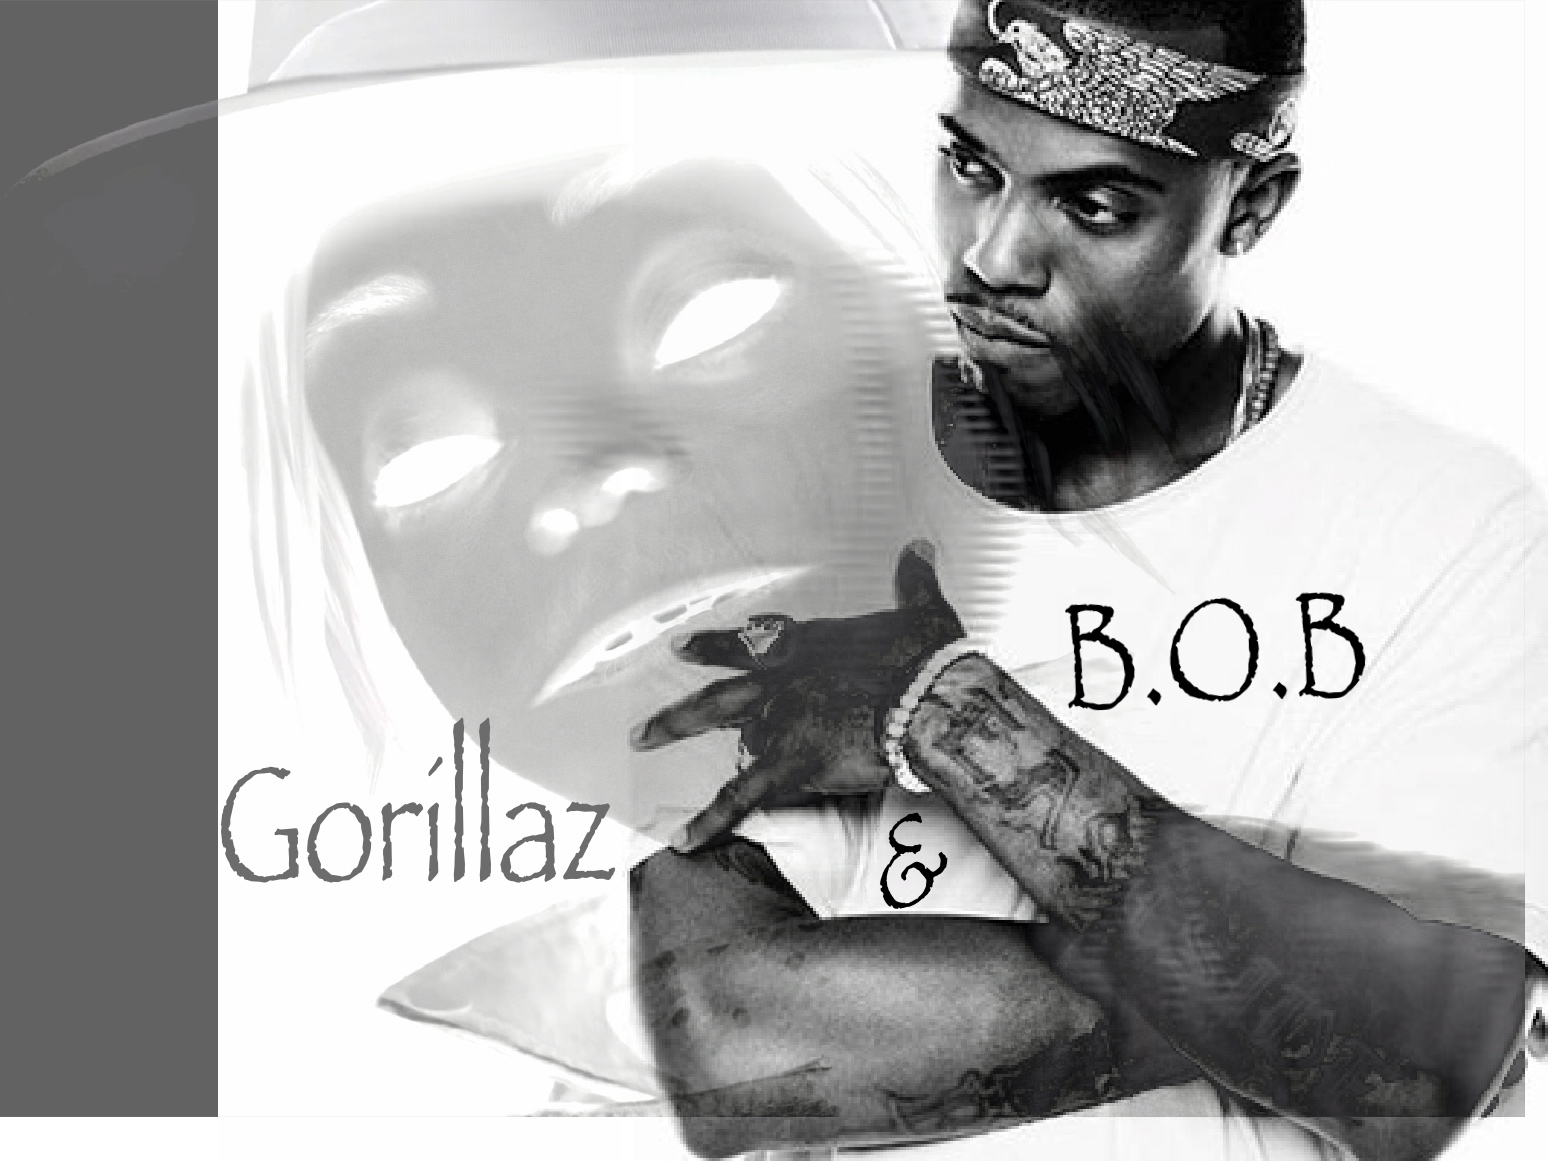 Gorillaz Vs. B.O.B review